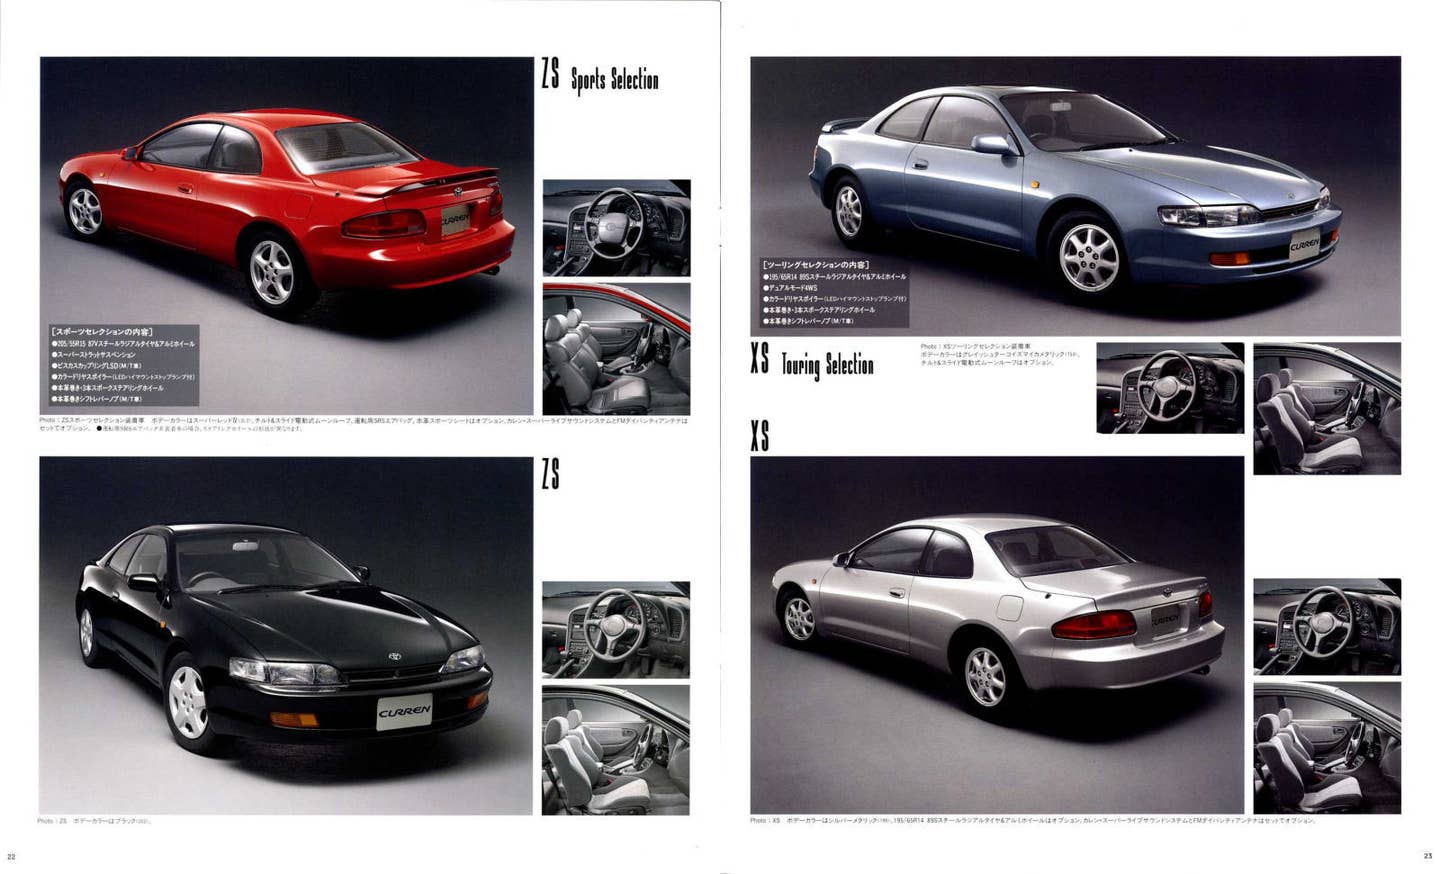 1994 Toyota Curren brochure scans